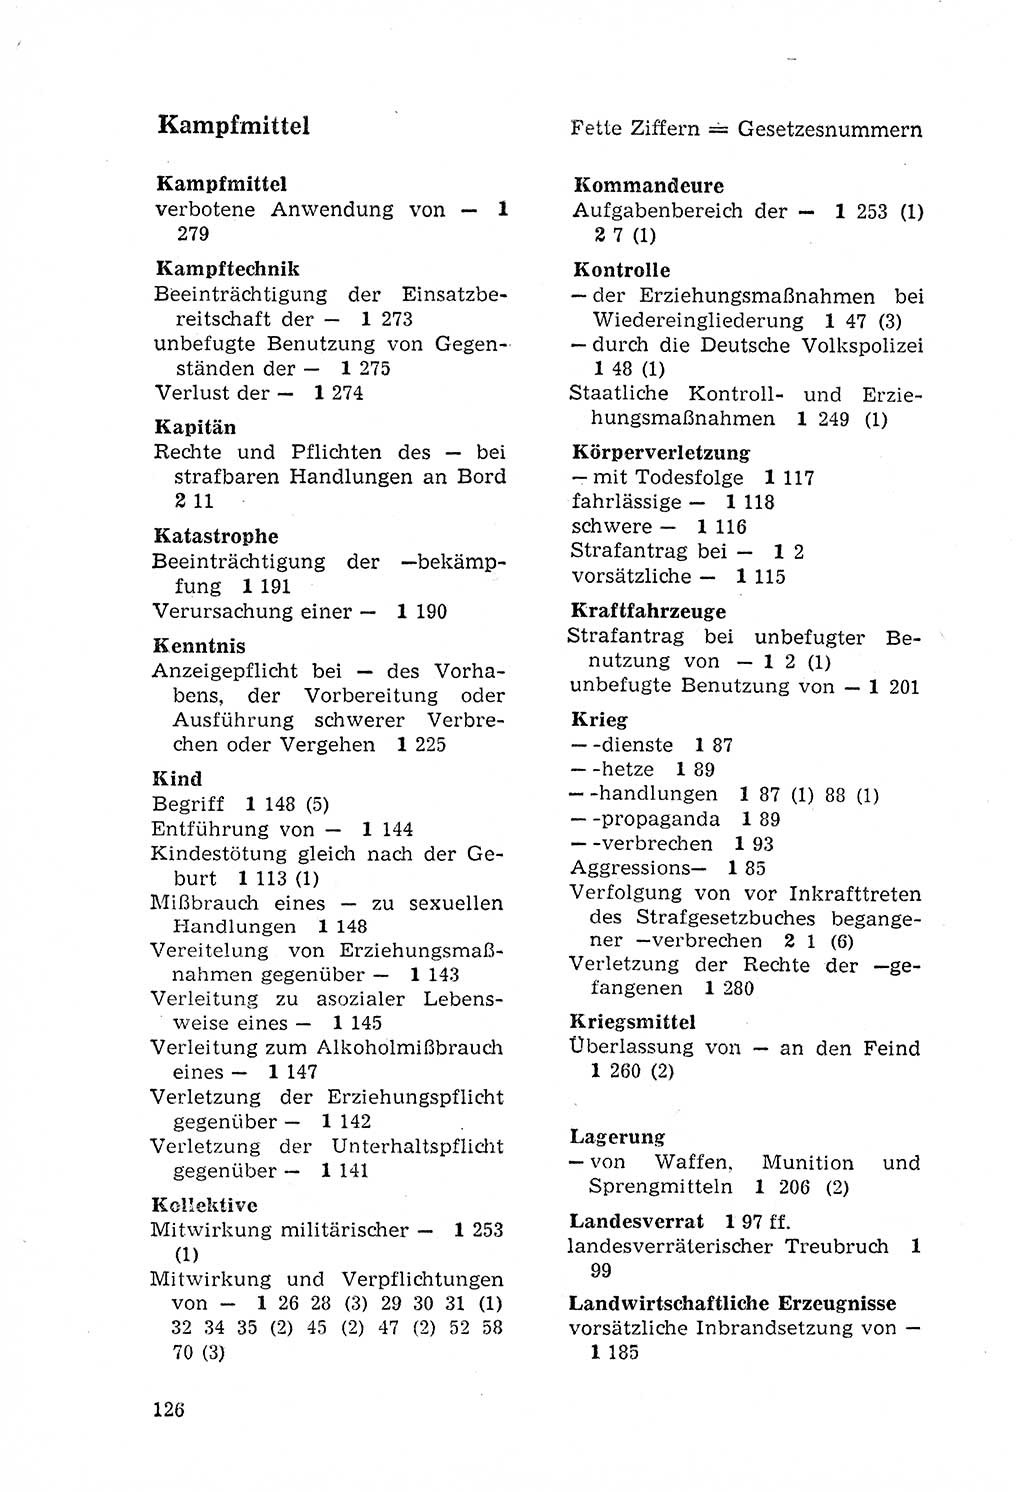 Strafgesetzbuch (StGB) der Deutschen Demokratischen Republik (DDR) 1968, Seite 126 (StGB DDR 1968, S. 126)